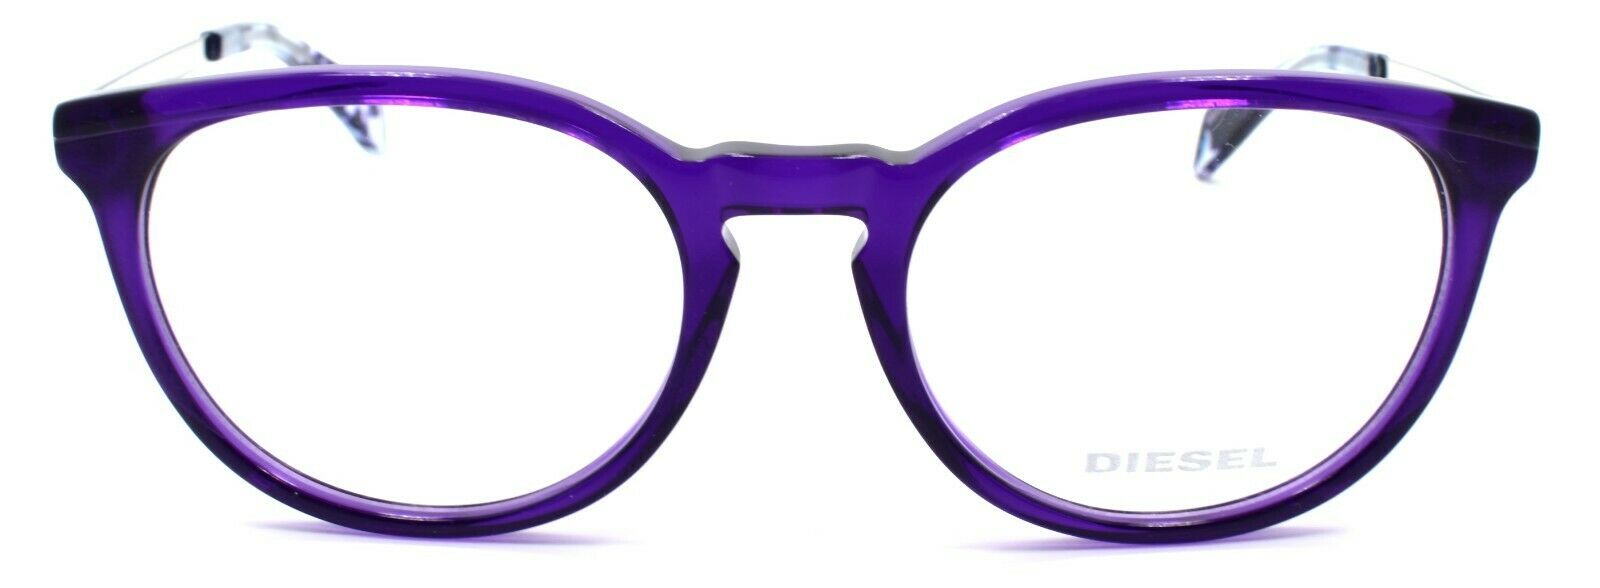 2-Diesel DL5150 092 Women's Eyeglasses Frames 50-18-140 Violet-664689707508-IKSpecs